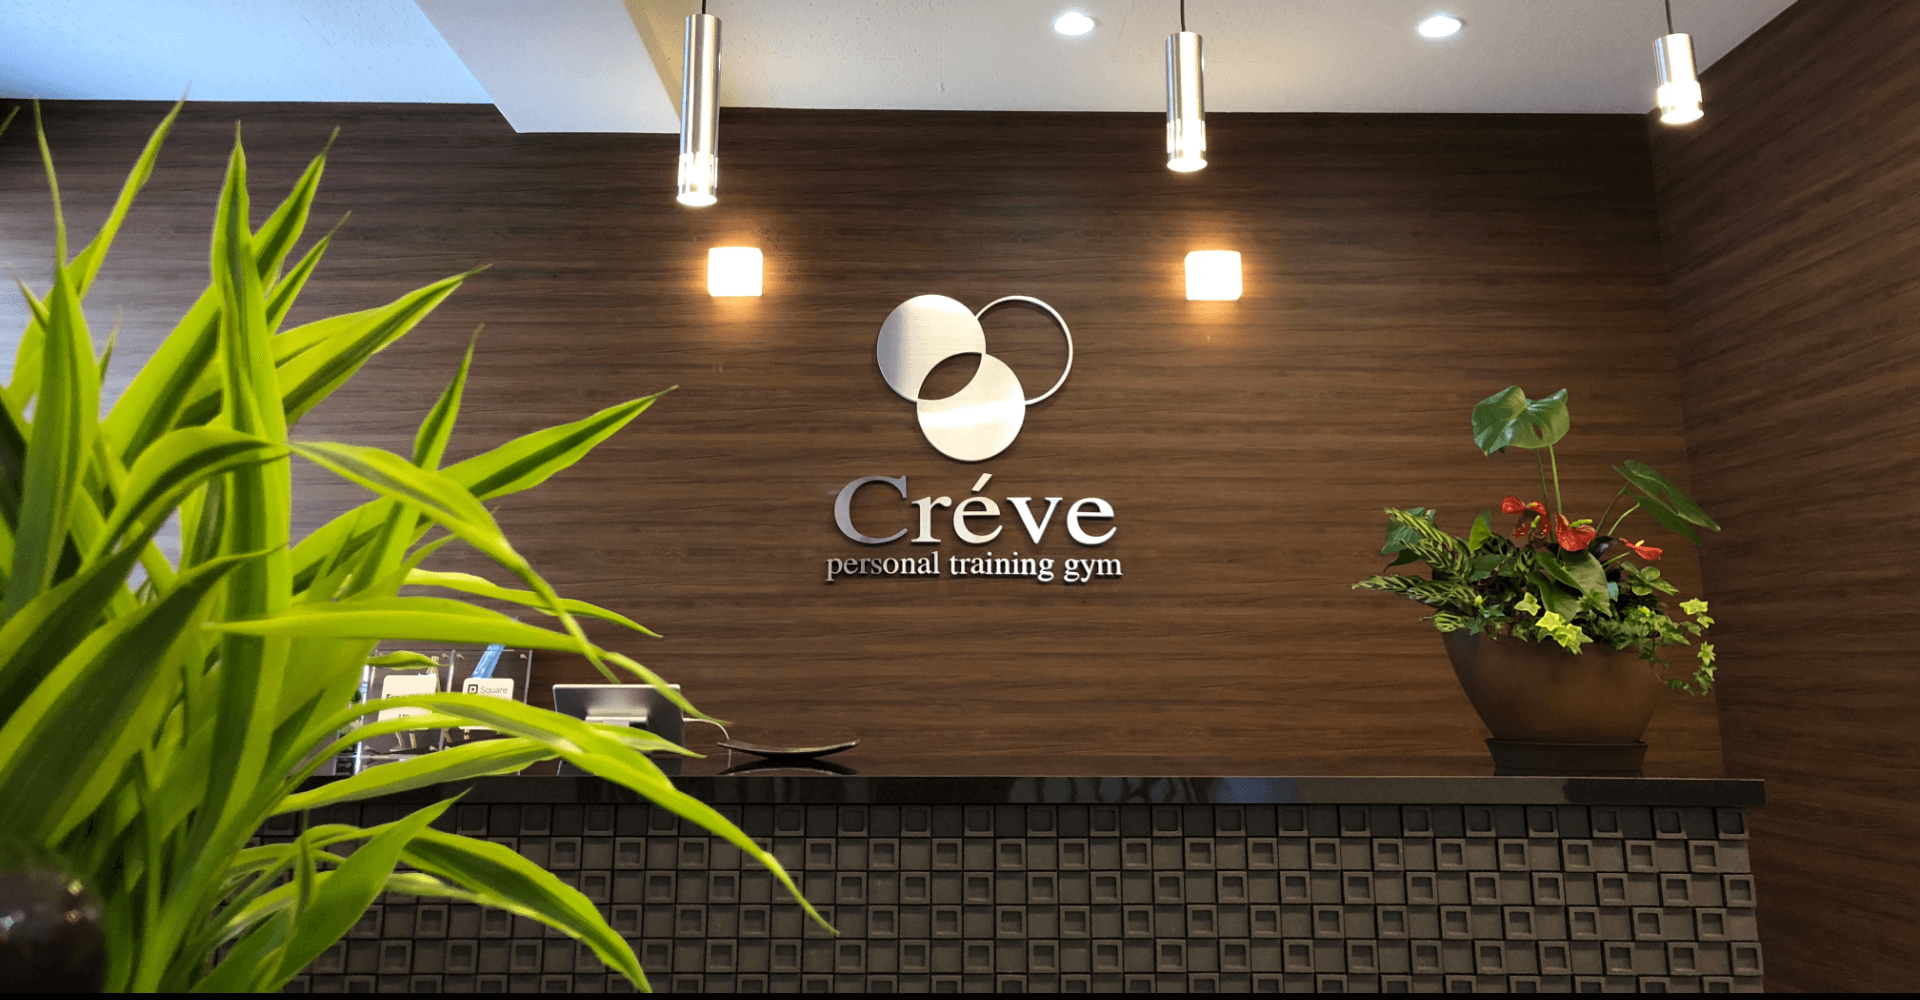 Creve |クレーブ・パーソナルトレーニングジム